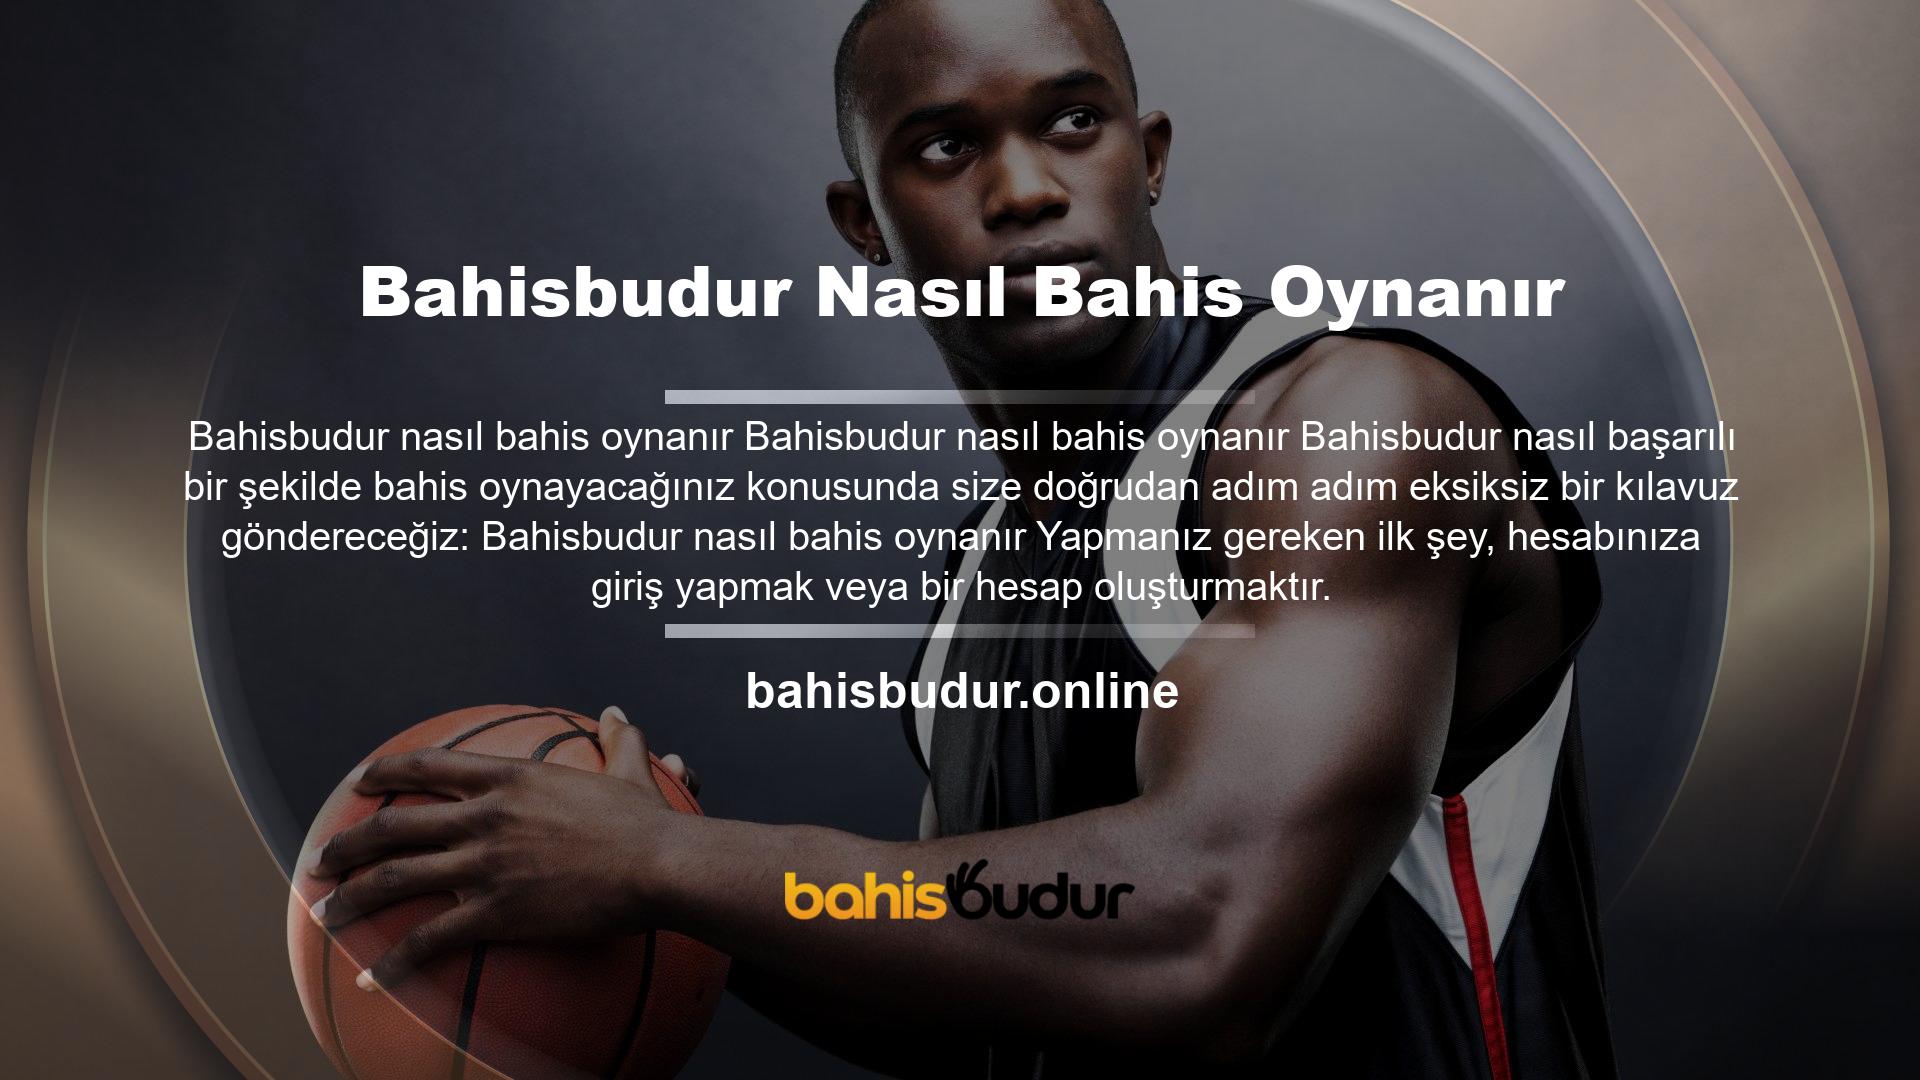 Bahisbudur web sitesinde nasıl hesap açacağınızdan emin değilseniz Bahisbudur Üyelik Süreci Kılavuzumuza göz atın